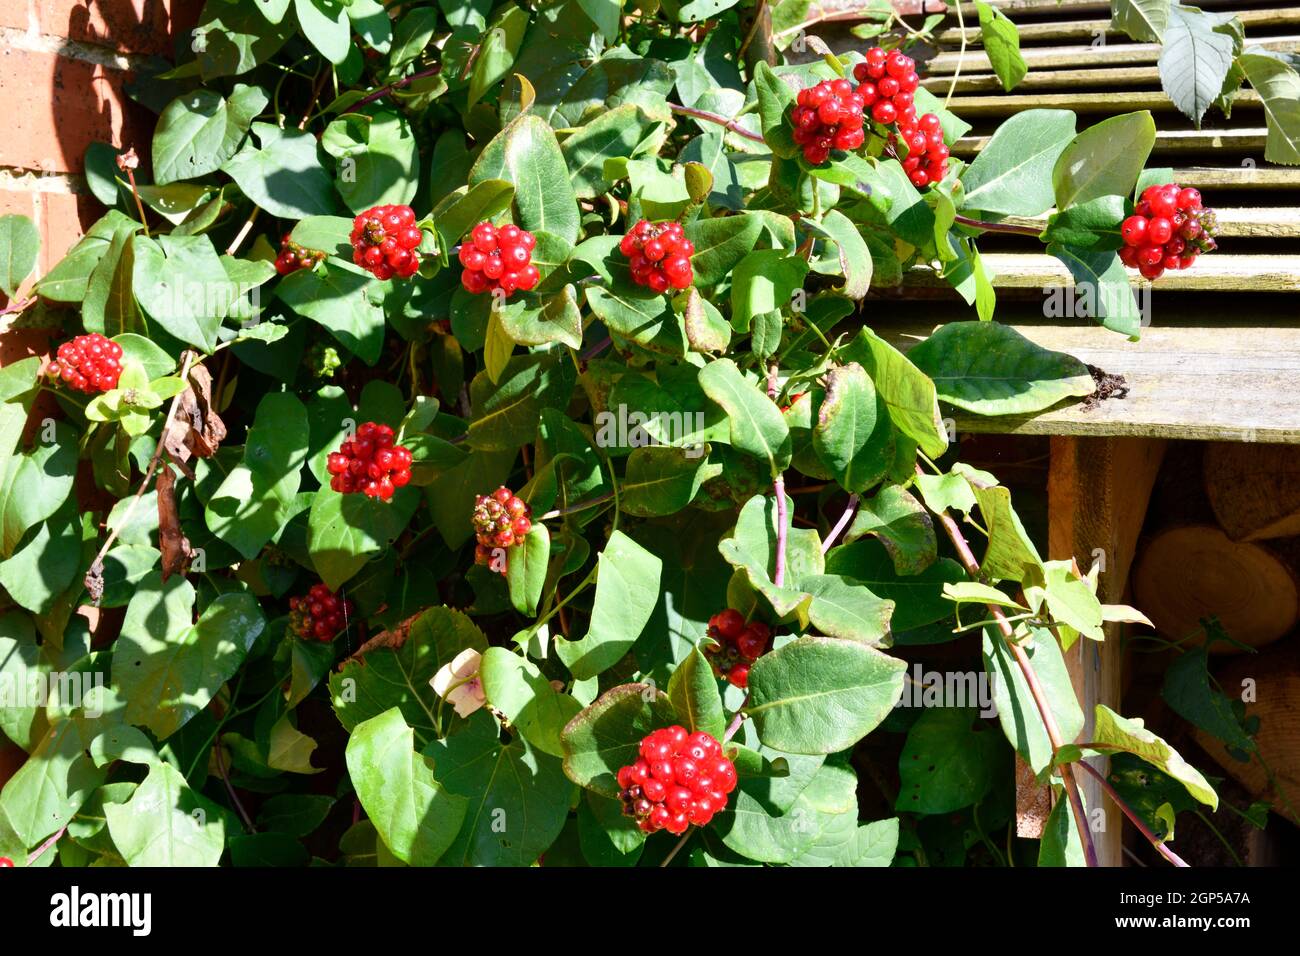 Honeysuckle Berries (Lonicera Periclymenum) Stock Photo